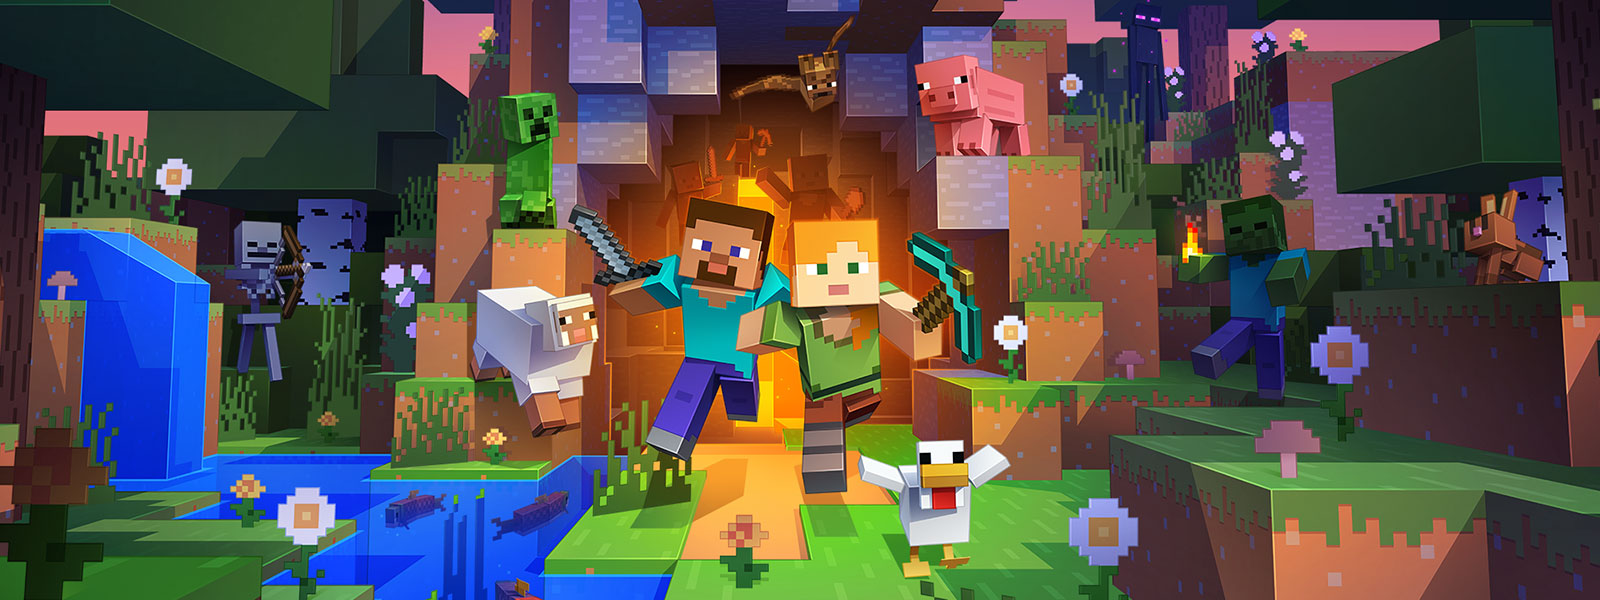 Zwei Charaktere kommen aus einem Tunnel mit vielen Kreaturen aus der Minecraft-Welt